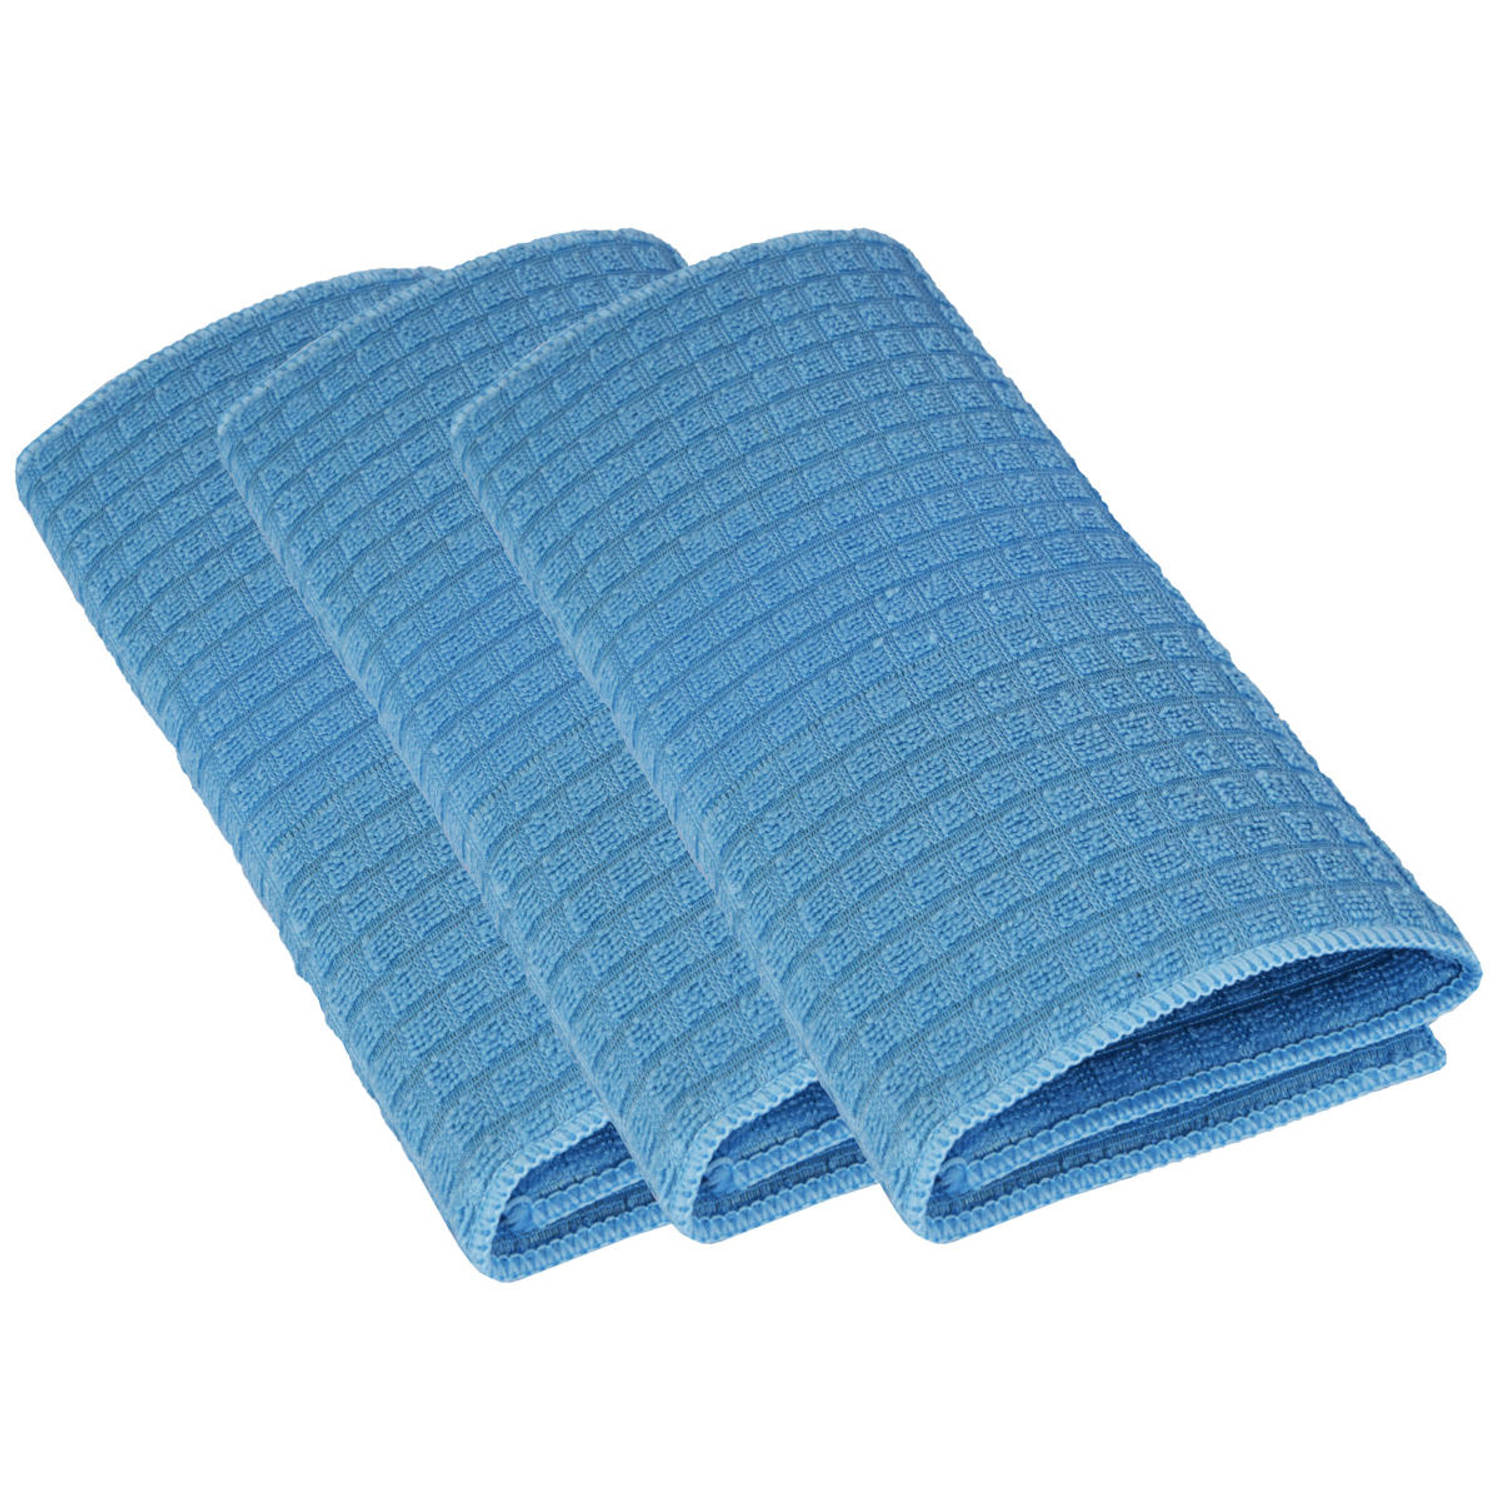 Multifunctionele Schoonmaakdoeken 30x40 cm | Antibacterieel en Vlekvrij Vaat-doek| 3 pack gebruik het als een Autodoek en Raamdoek |Blauw